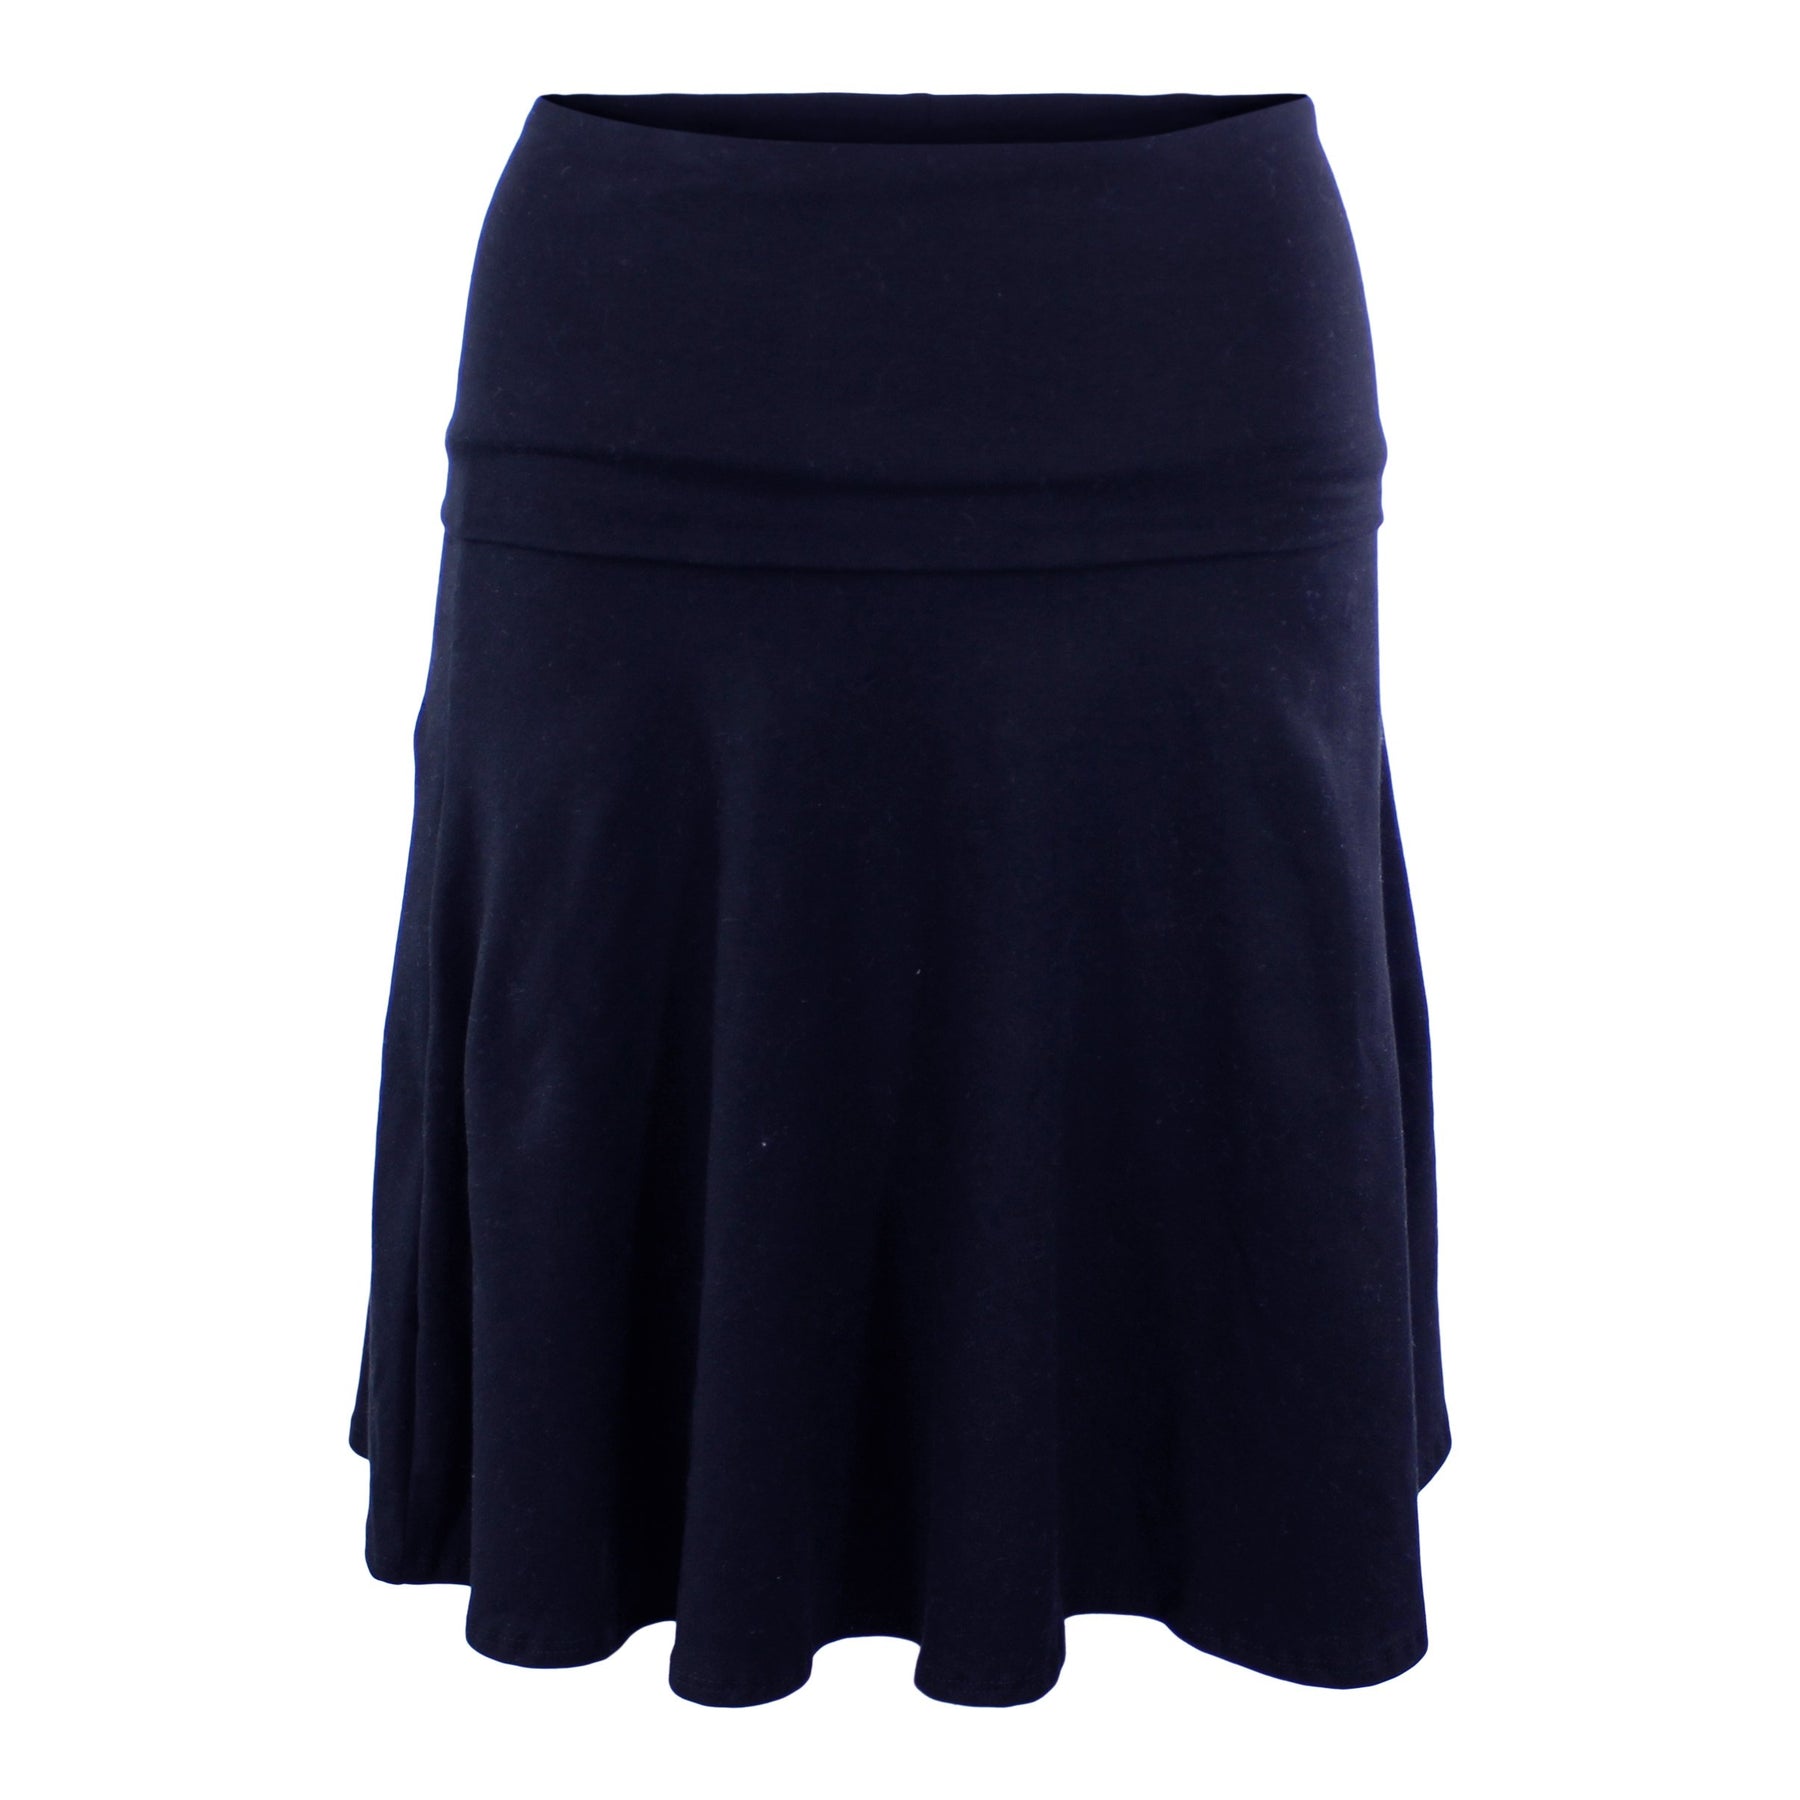 Rollover Skirt – Denny's